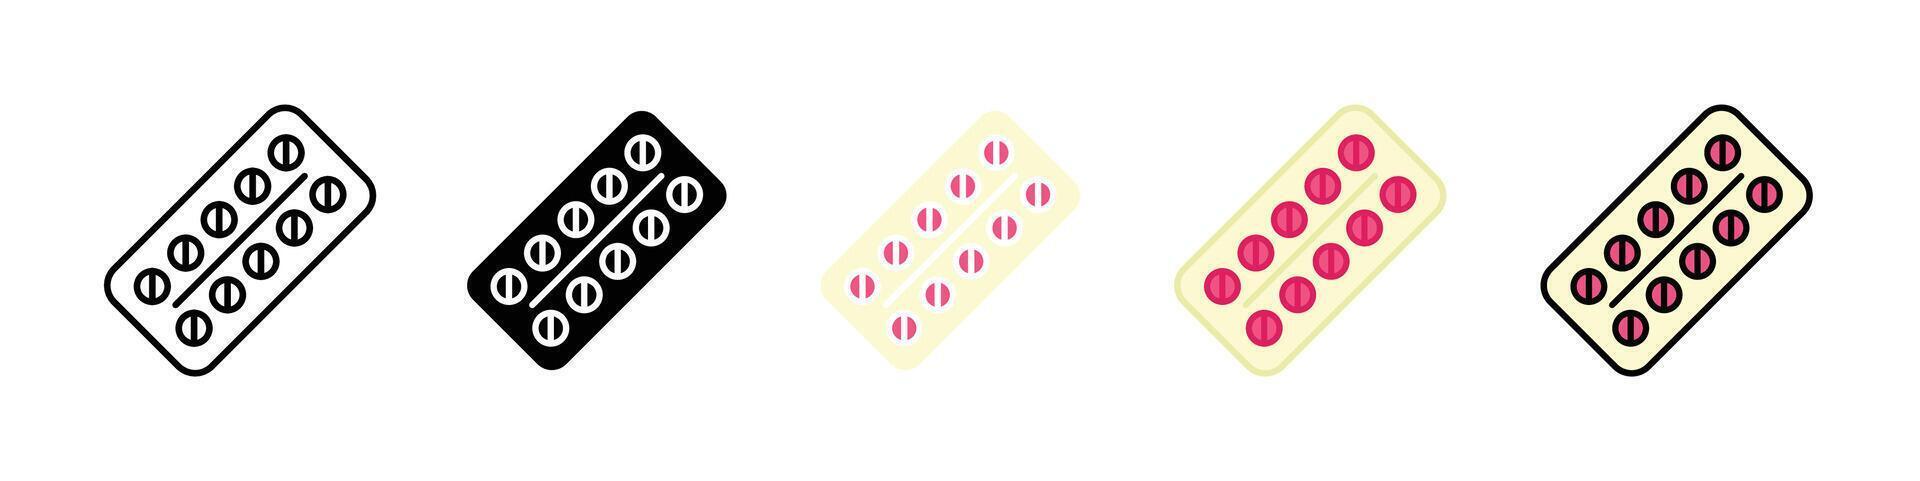 Oral contraception icon vector